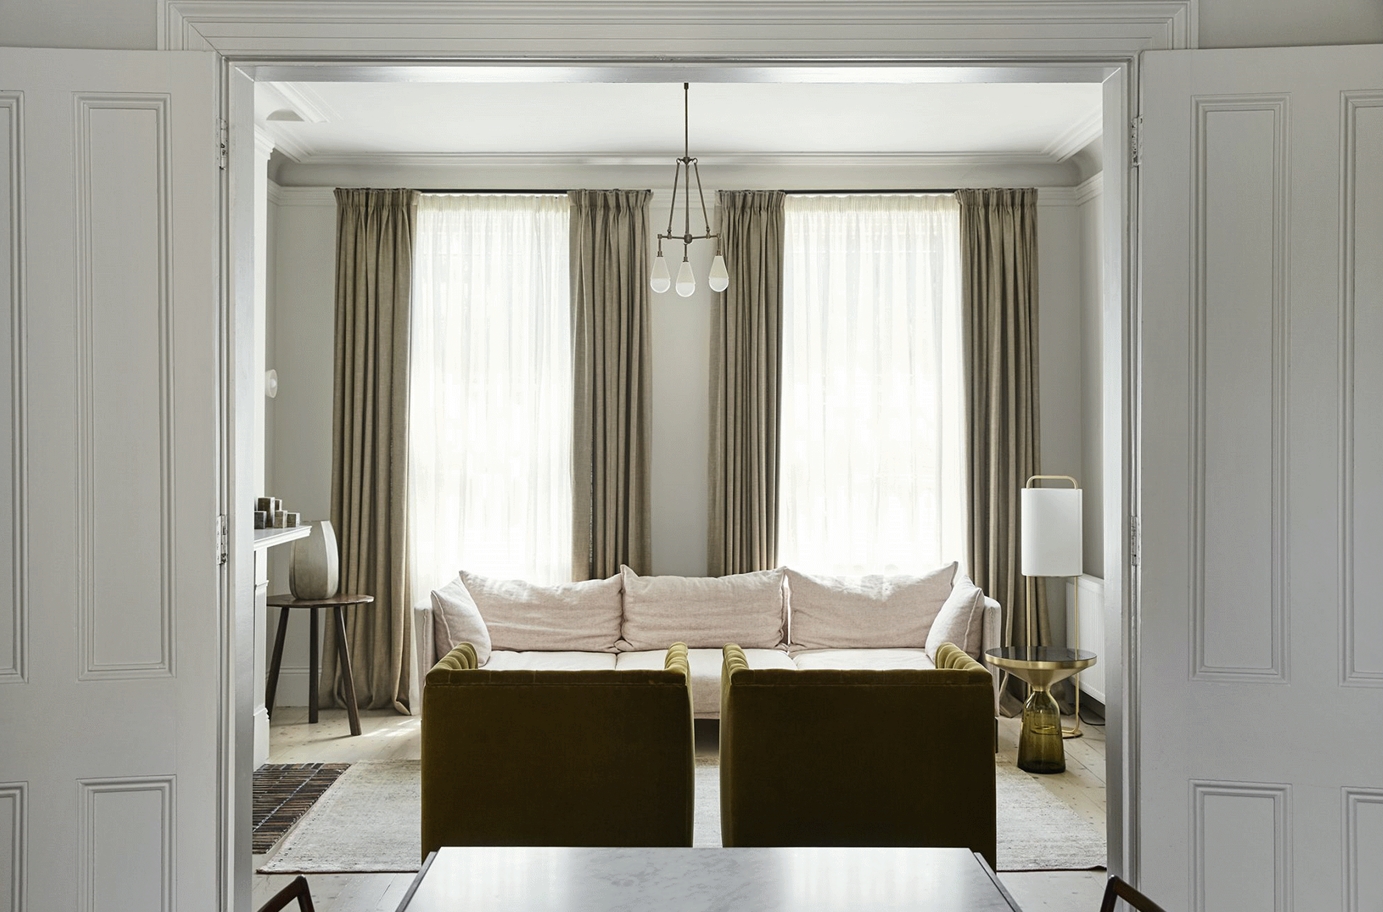 沙发设计简约素雅，在白色调的烘托下，布艺沙发、米色窗帘、金属点缀，都呈现出现代色彩美学。